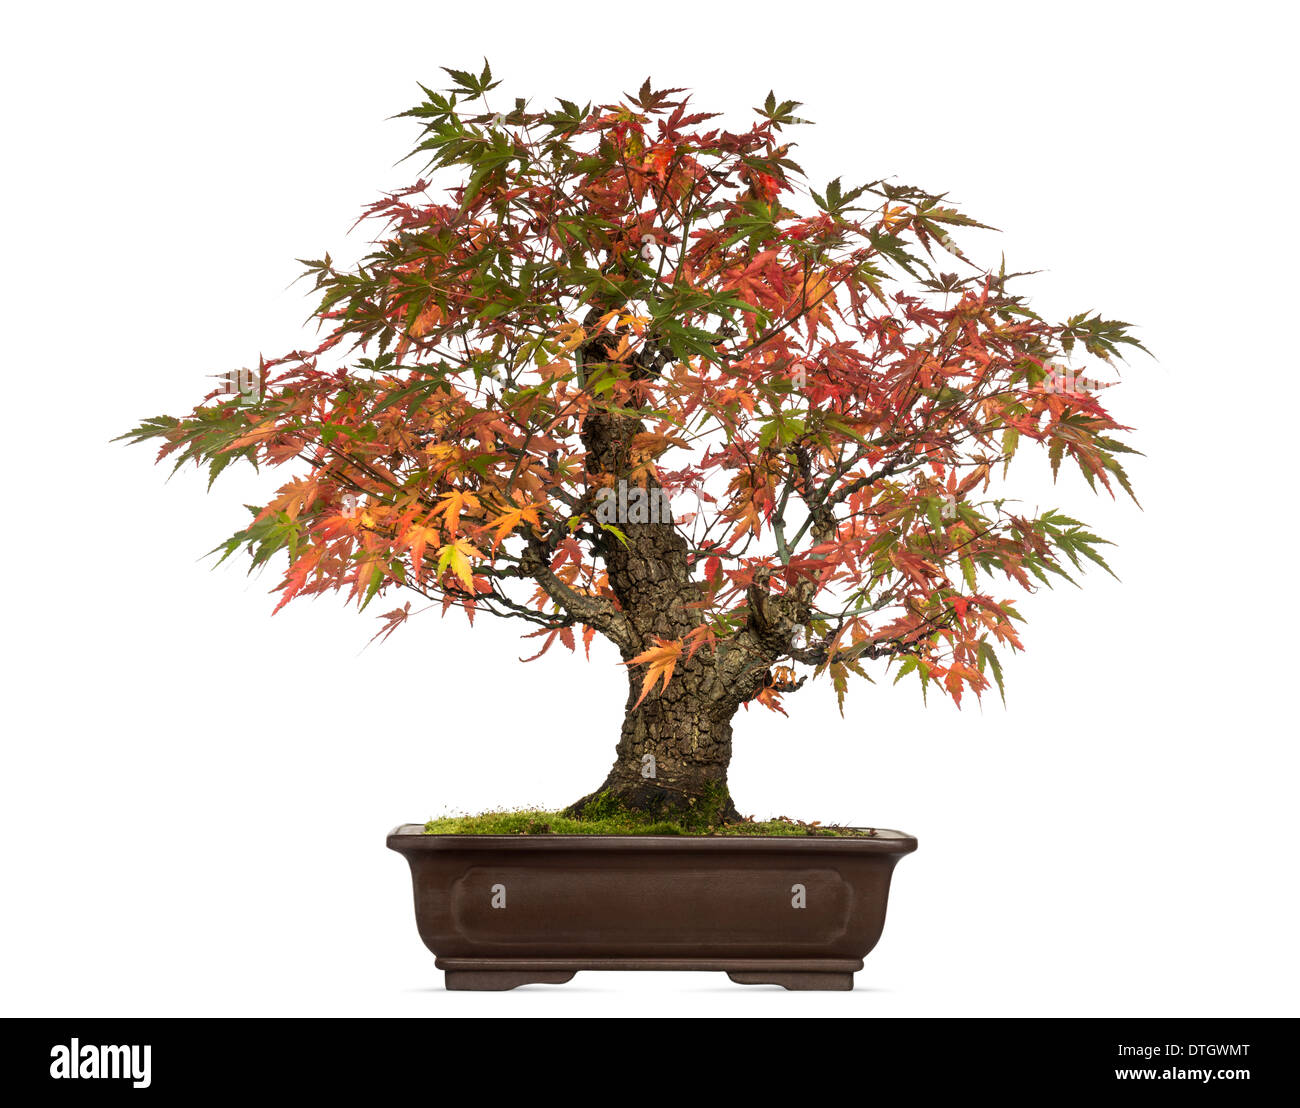 Downy Japanese Maple, Acer japonicum, bonsai tree, against white background Stock Photo